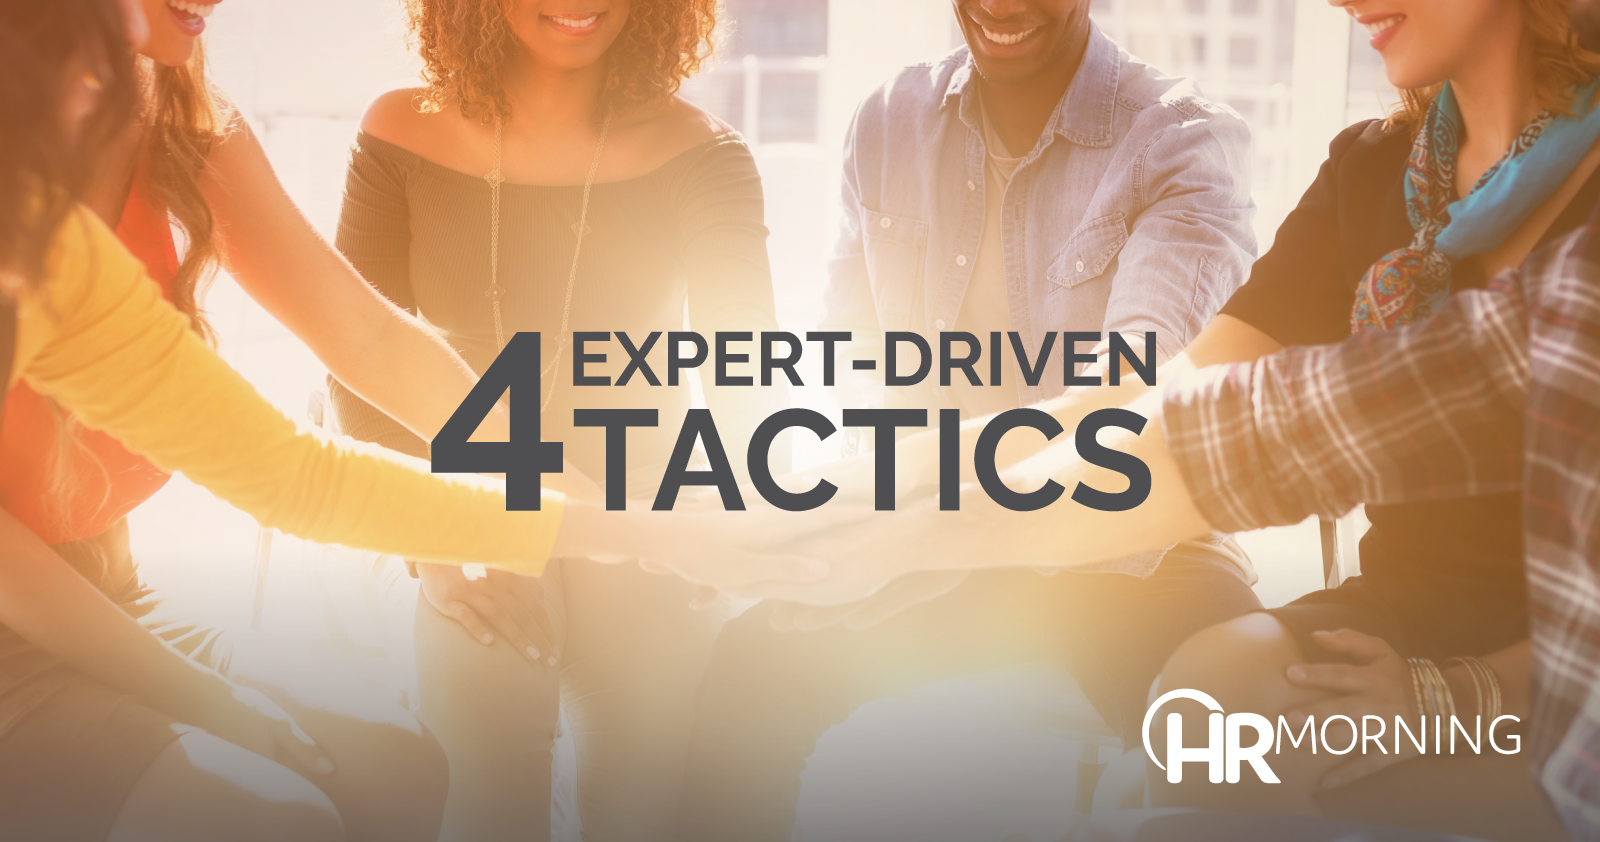 4 expert driven tactics